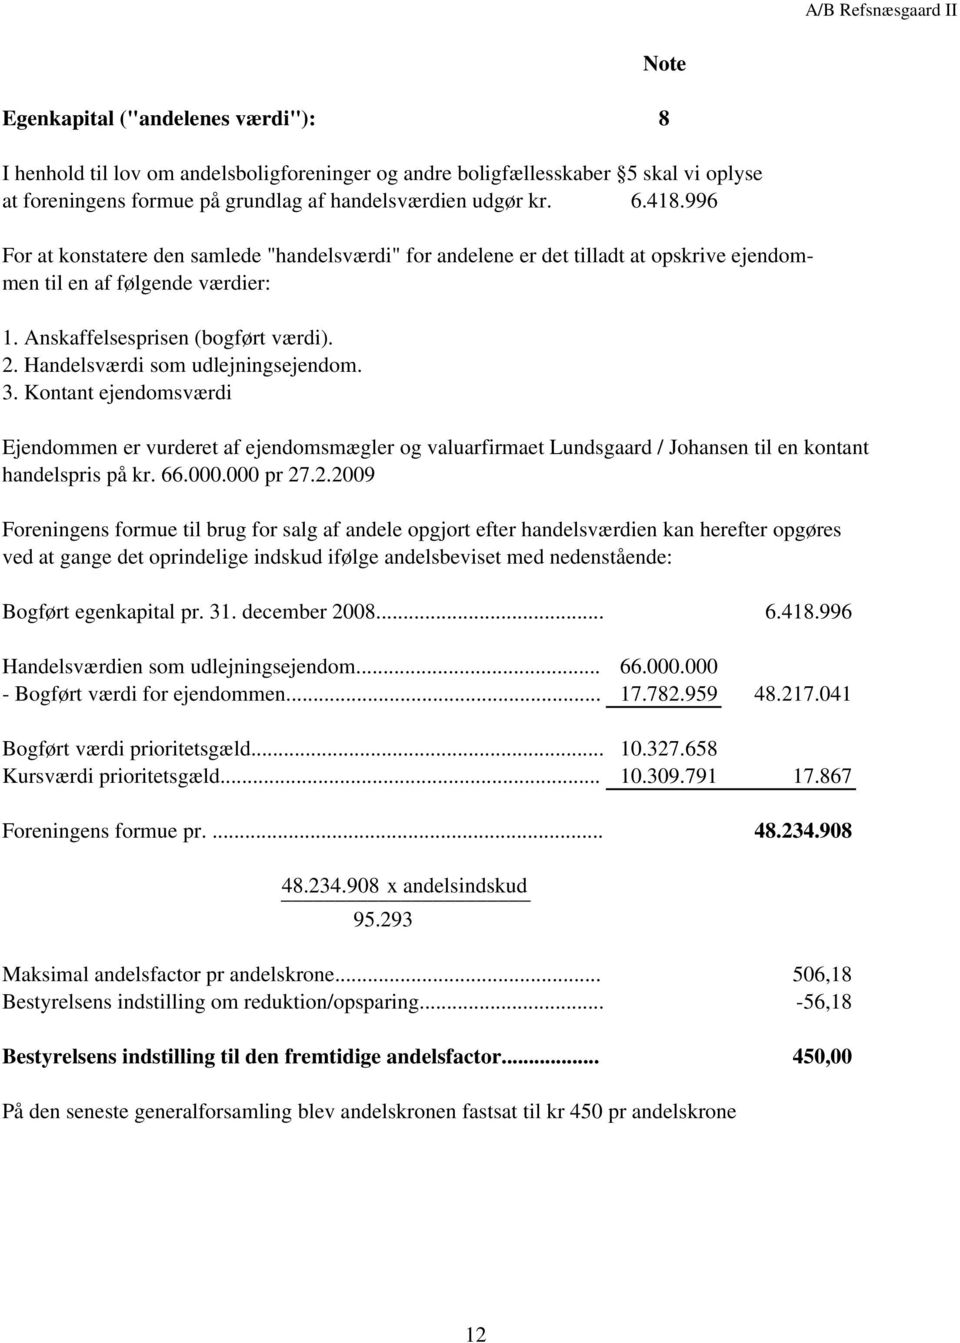 Handelsværdi som udlejningsejendom. 3. Kontant ejendomsværdi Ejendommen er vurderet af ejendomsmægler og valuarfirmaet Lundsgaard / Johansen til en kontant handelspris på kr. 66.000.000 pr 27